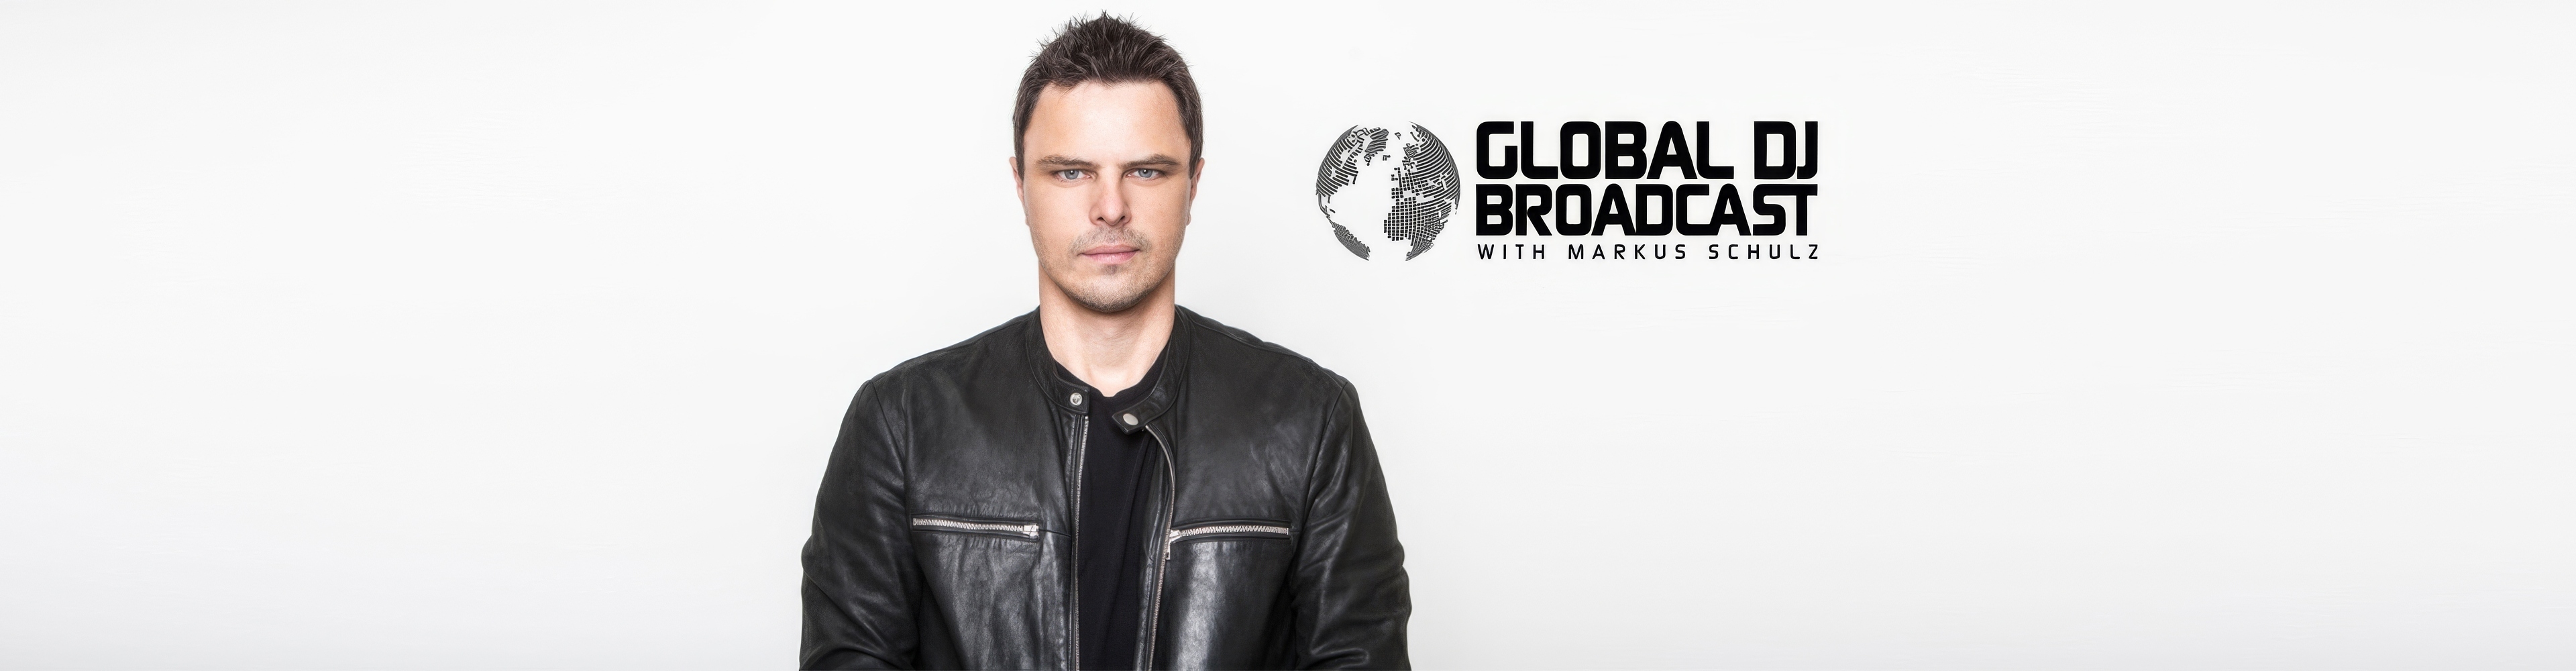 Markus Schulz presents Global DJ Broadcast